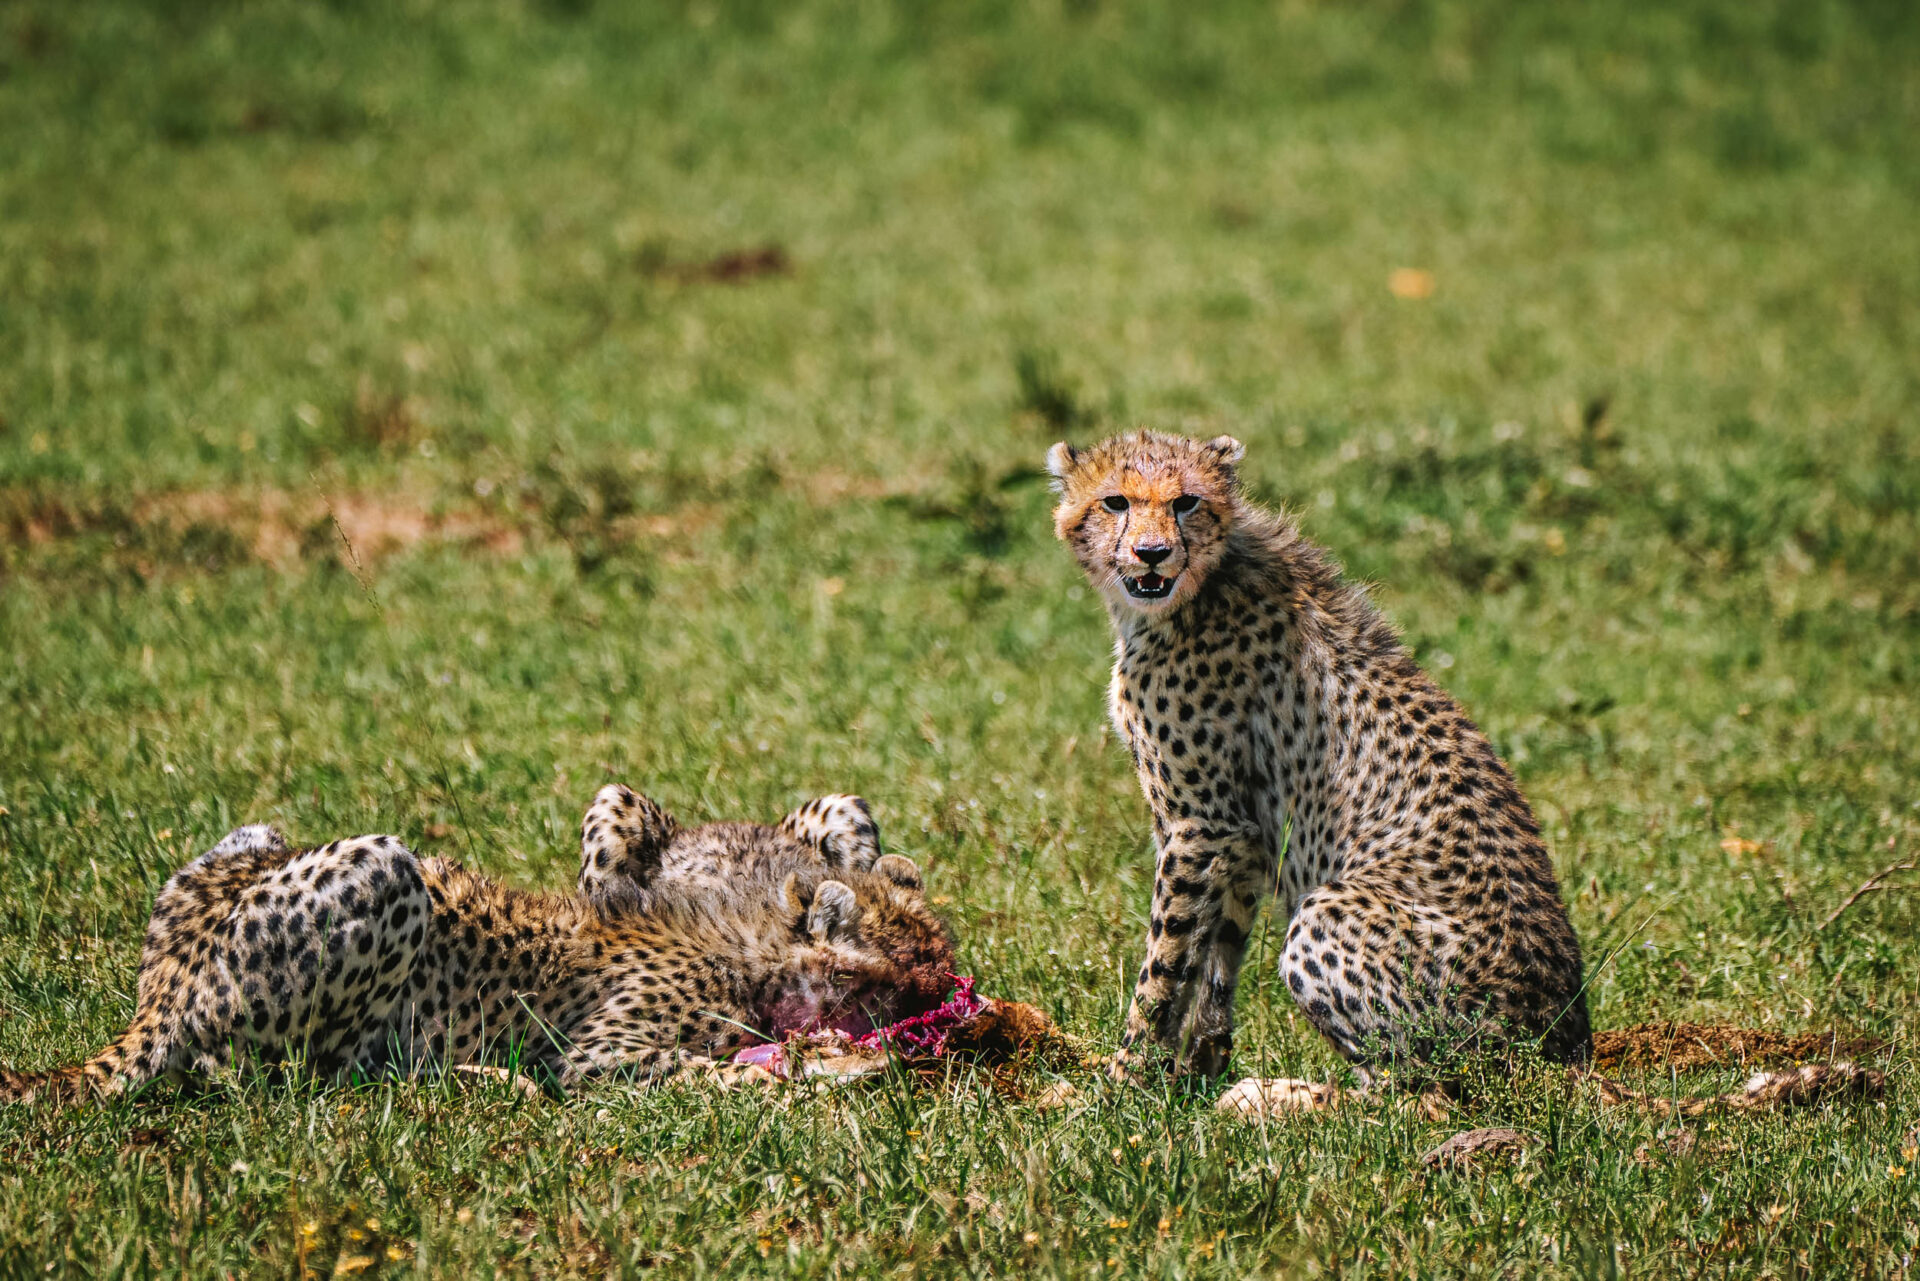 Young cheetahs enjoying their kill in Masai Mara